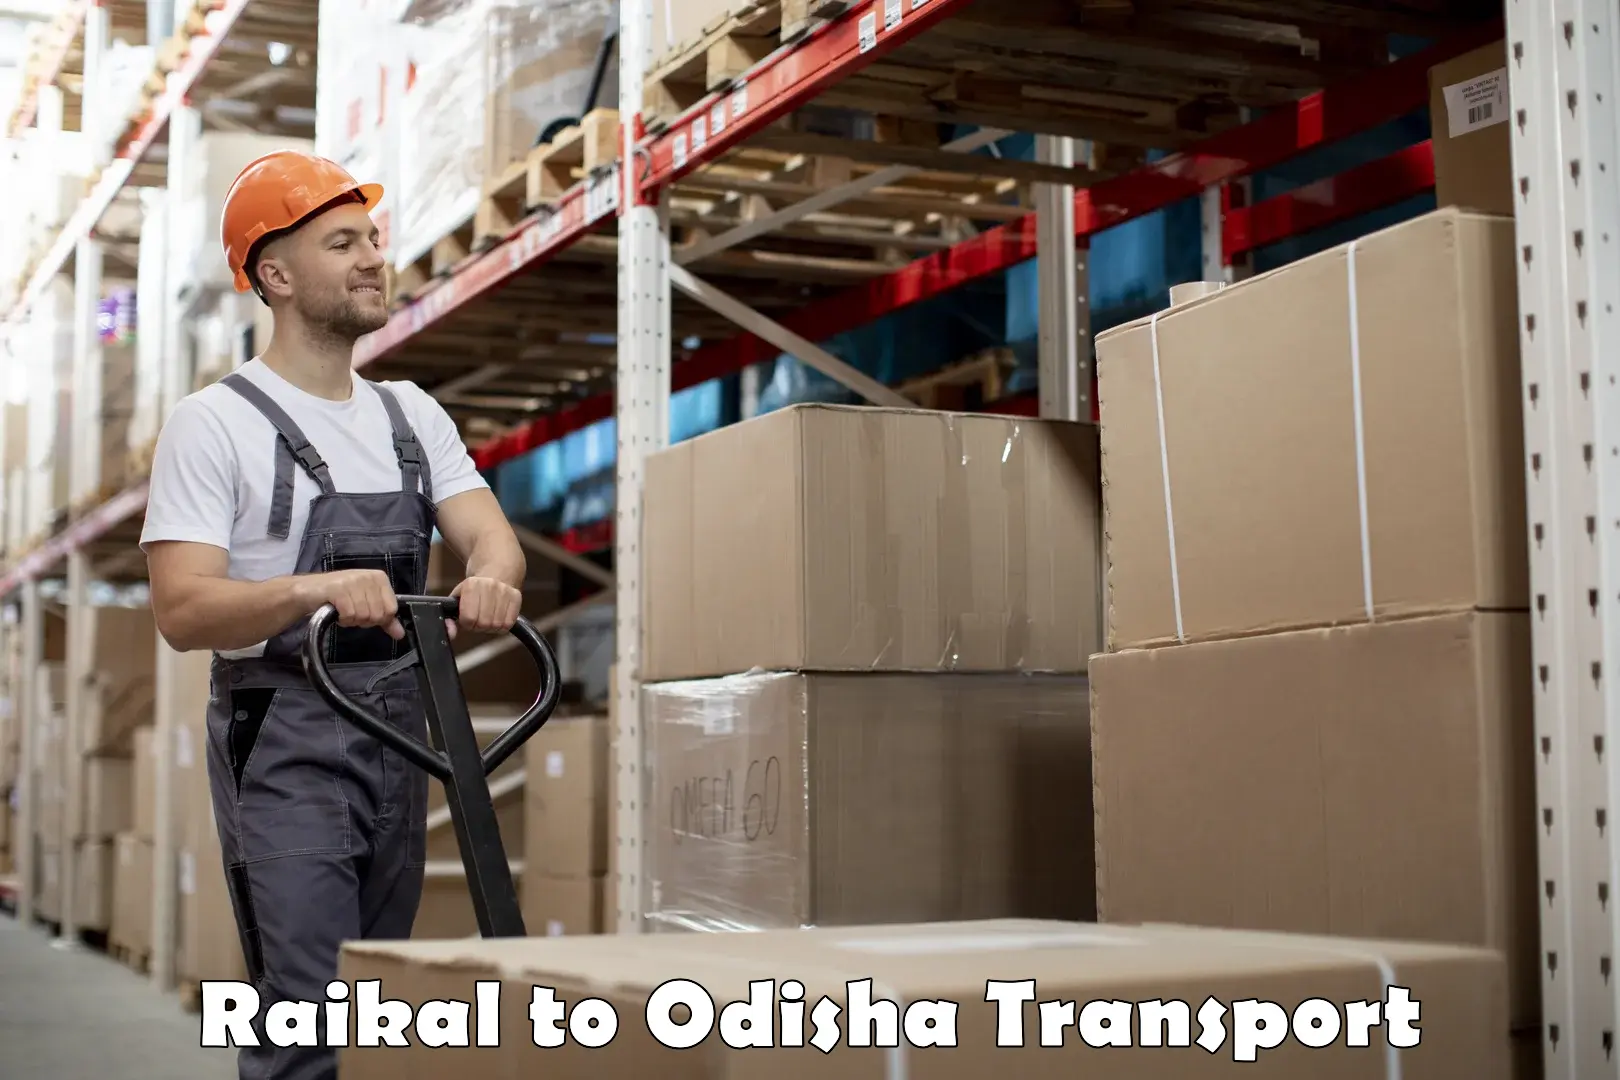 Nearby transport service Raikal to Odisha